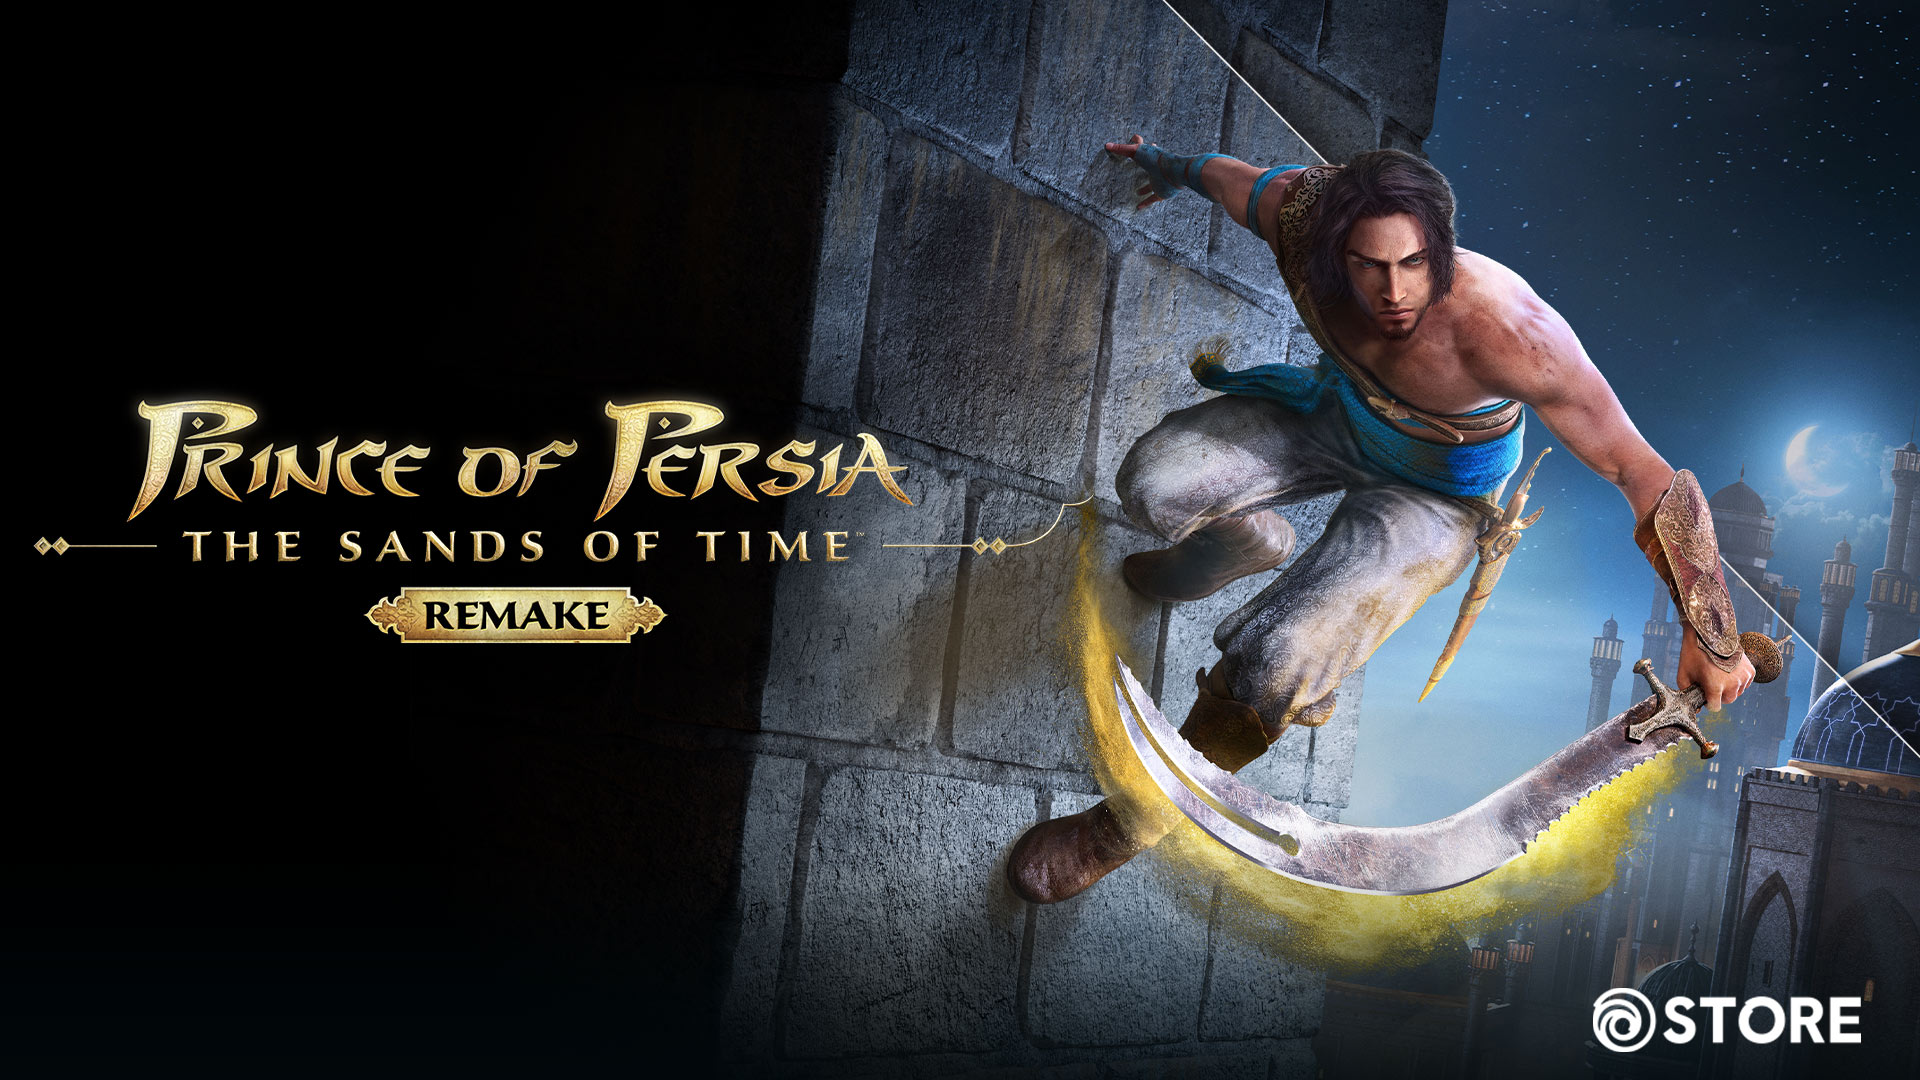  Prince of Persia: The Sands of Time Remake ประกาศวางจำหน่ายในปี 2022 และจะไม่มีการแสดงตัวอย่างใหม่ในงาน E3 2021 